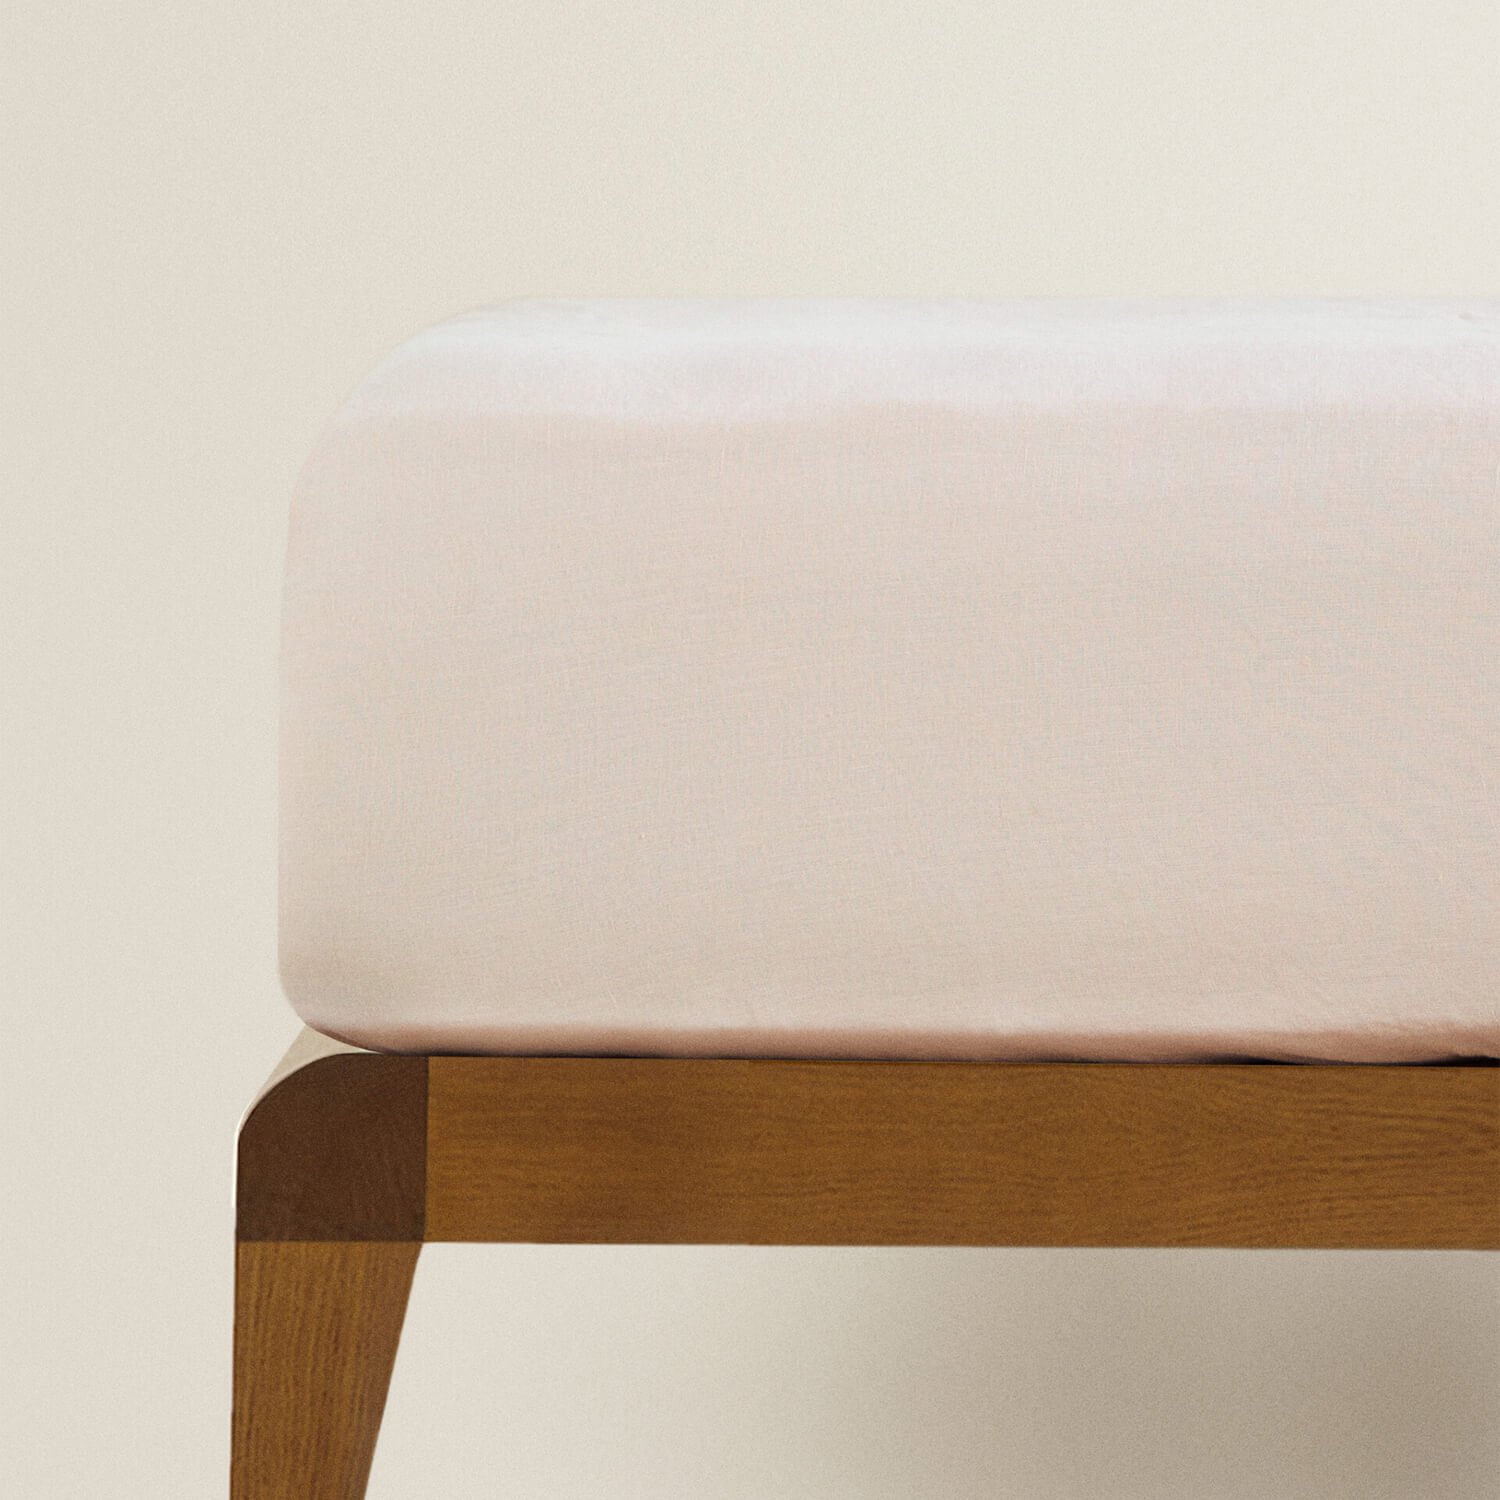 Простыня на резинке Zara Home Children’s Washed Linen, розовый простыня натяжная однотонная из стираного льна 160 x 200 см зеленый